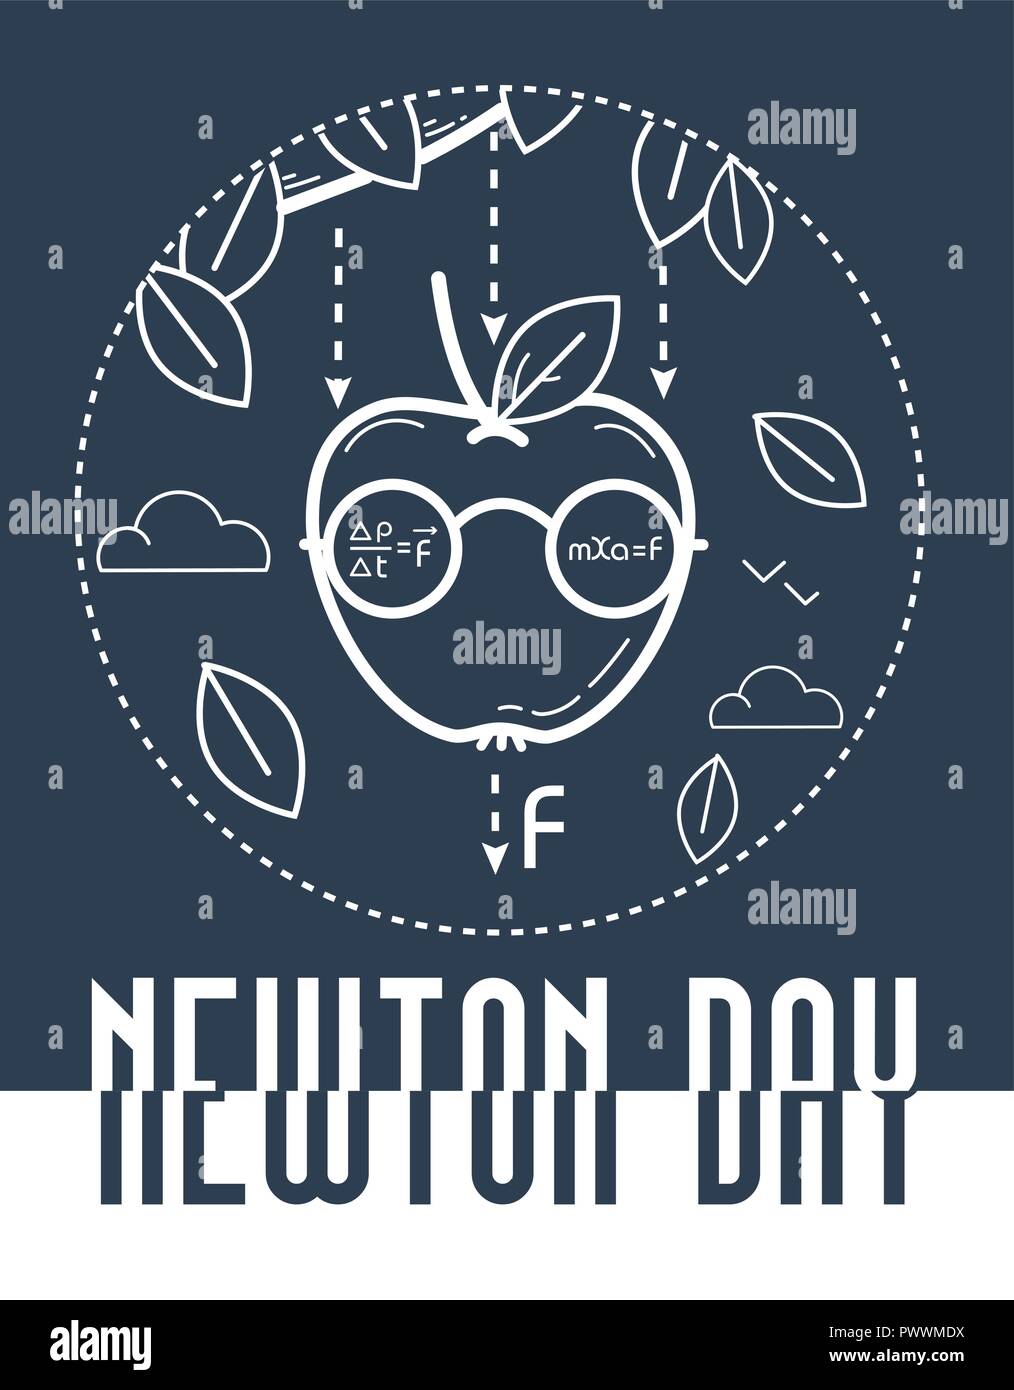 Título educativo para las vacaciones de Newton día ilustración en blanco y negro. Ilustración del Vector